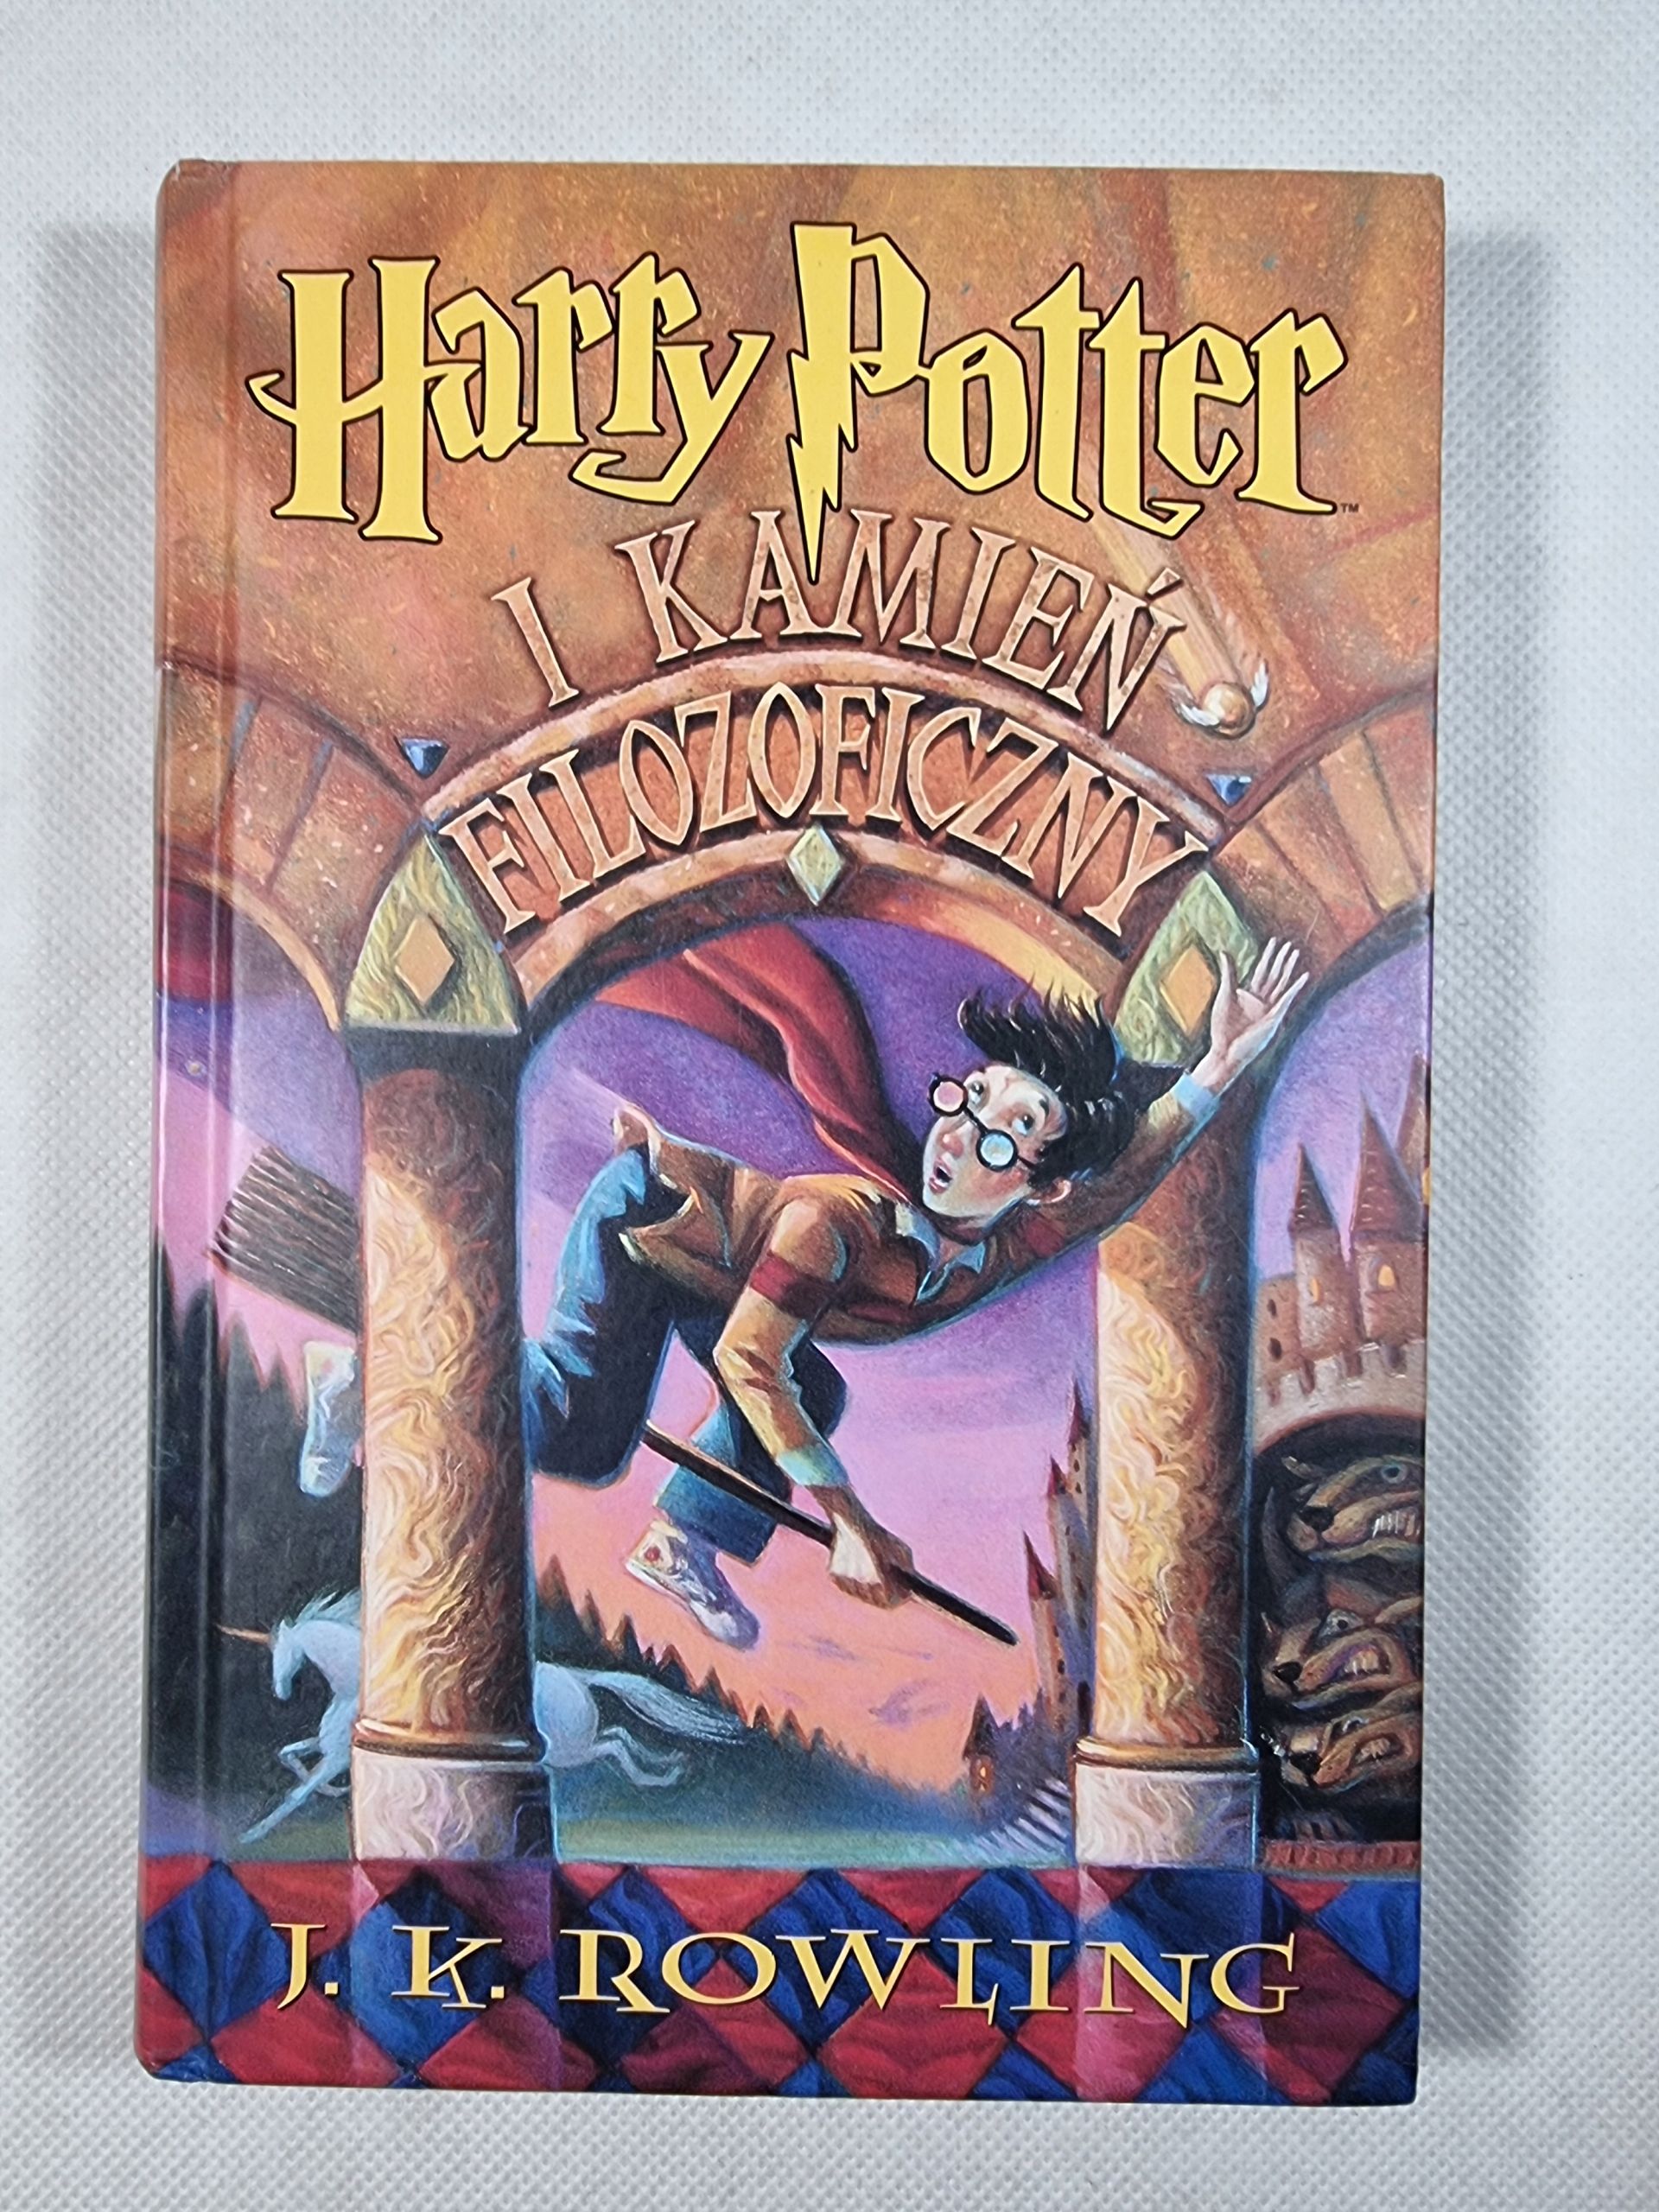 TWARDA / Harry Potter i Kamień Filozoficzny / J.K. Rowling